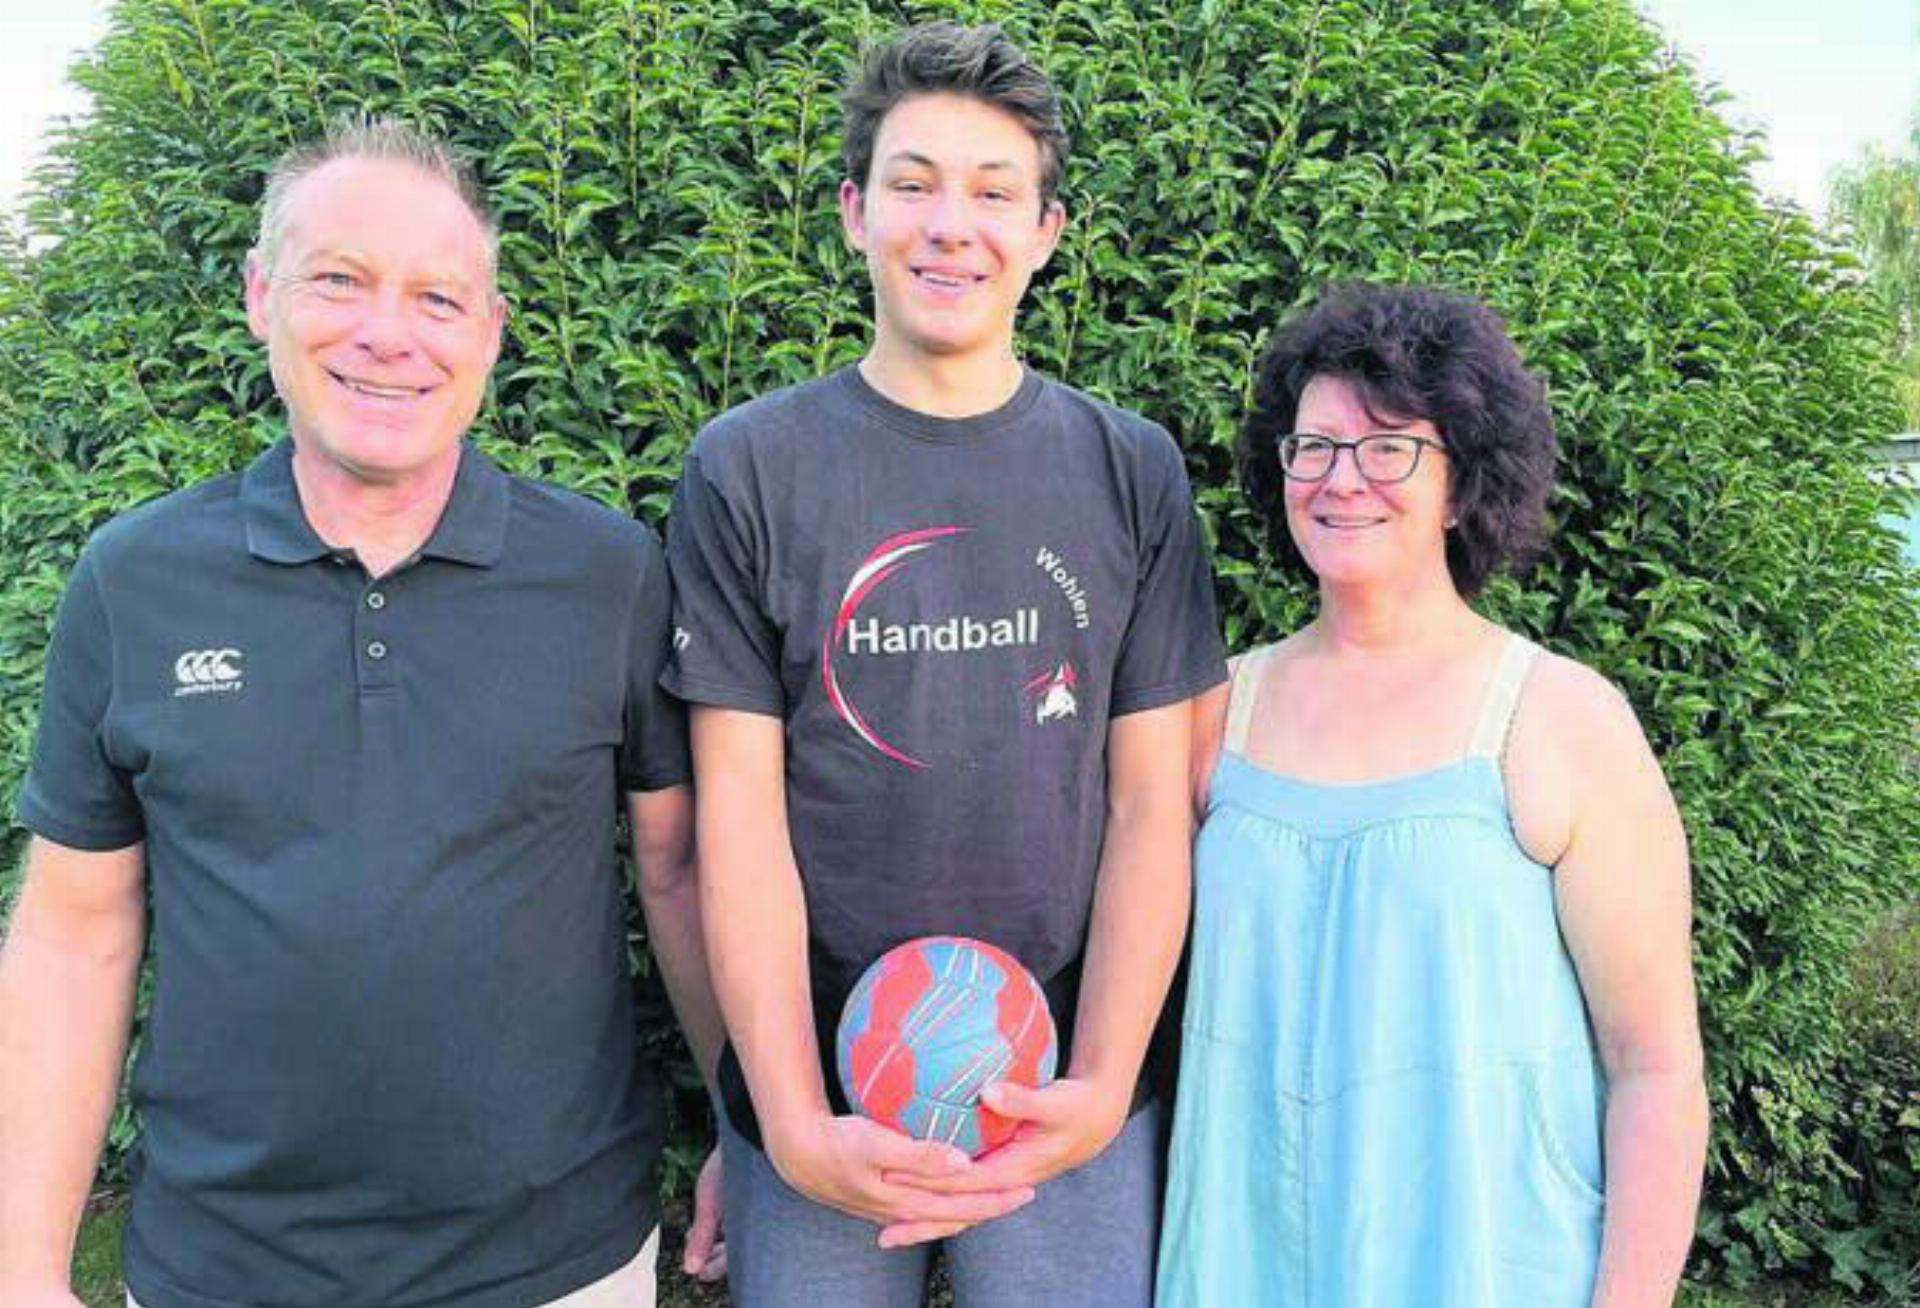 Vater Thomas und Mutter Barbara haben ihre Leidenschaft zum Handball dem Sohn Joshua mitgegeben. Bilder: zg/awa